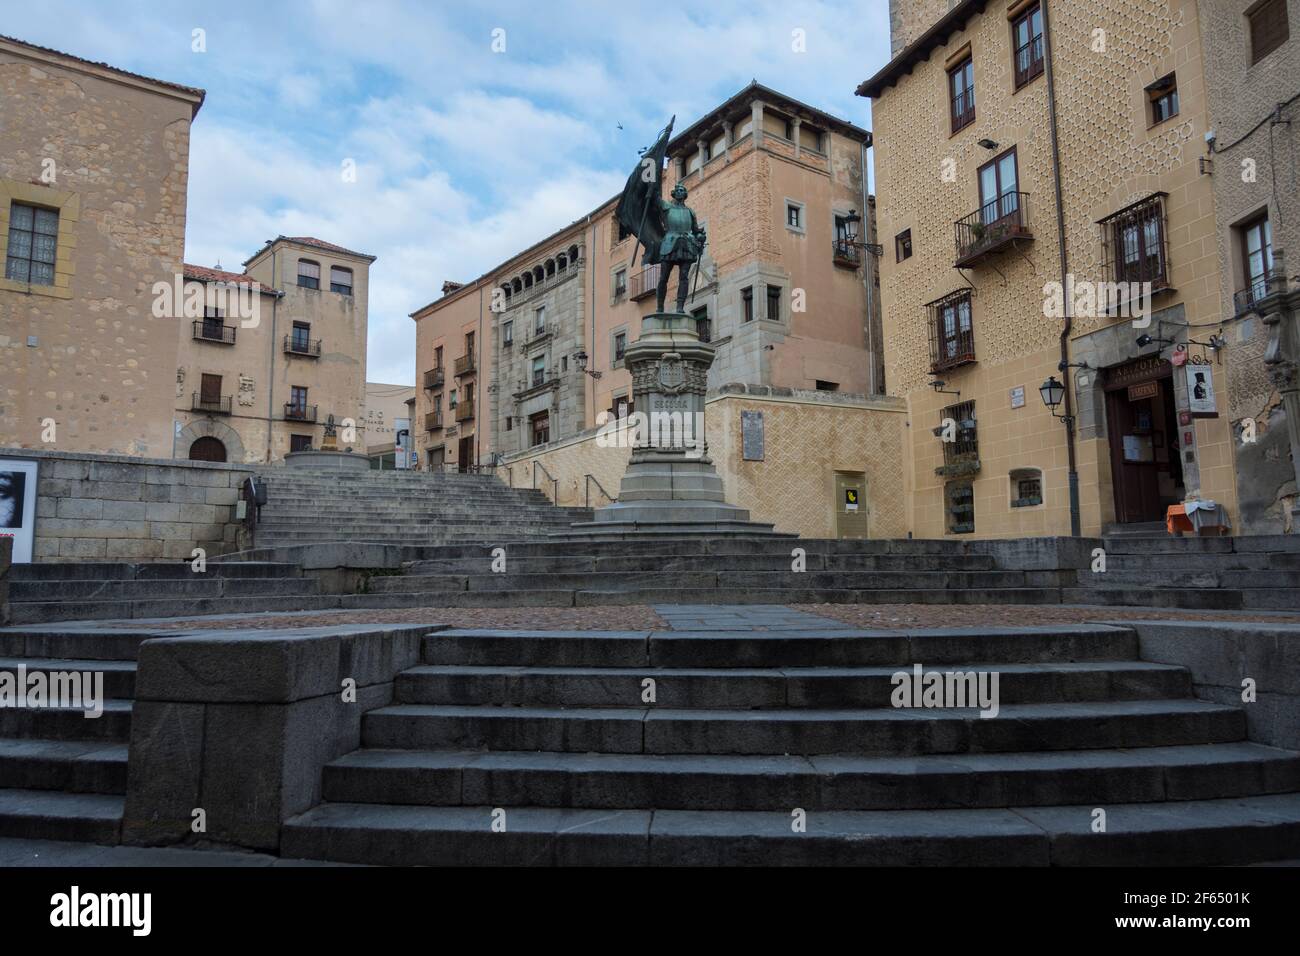 Statue of Juan Bravo in Segovia, Spain. Stock Photo